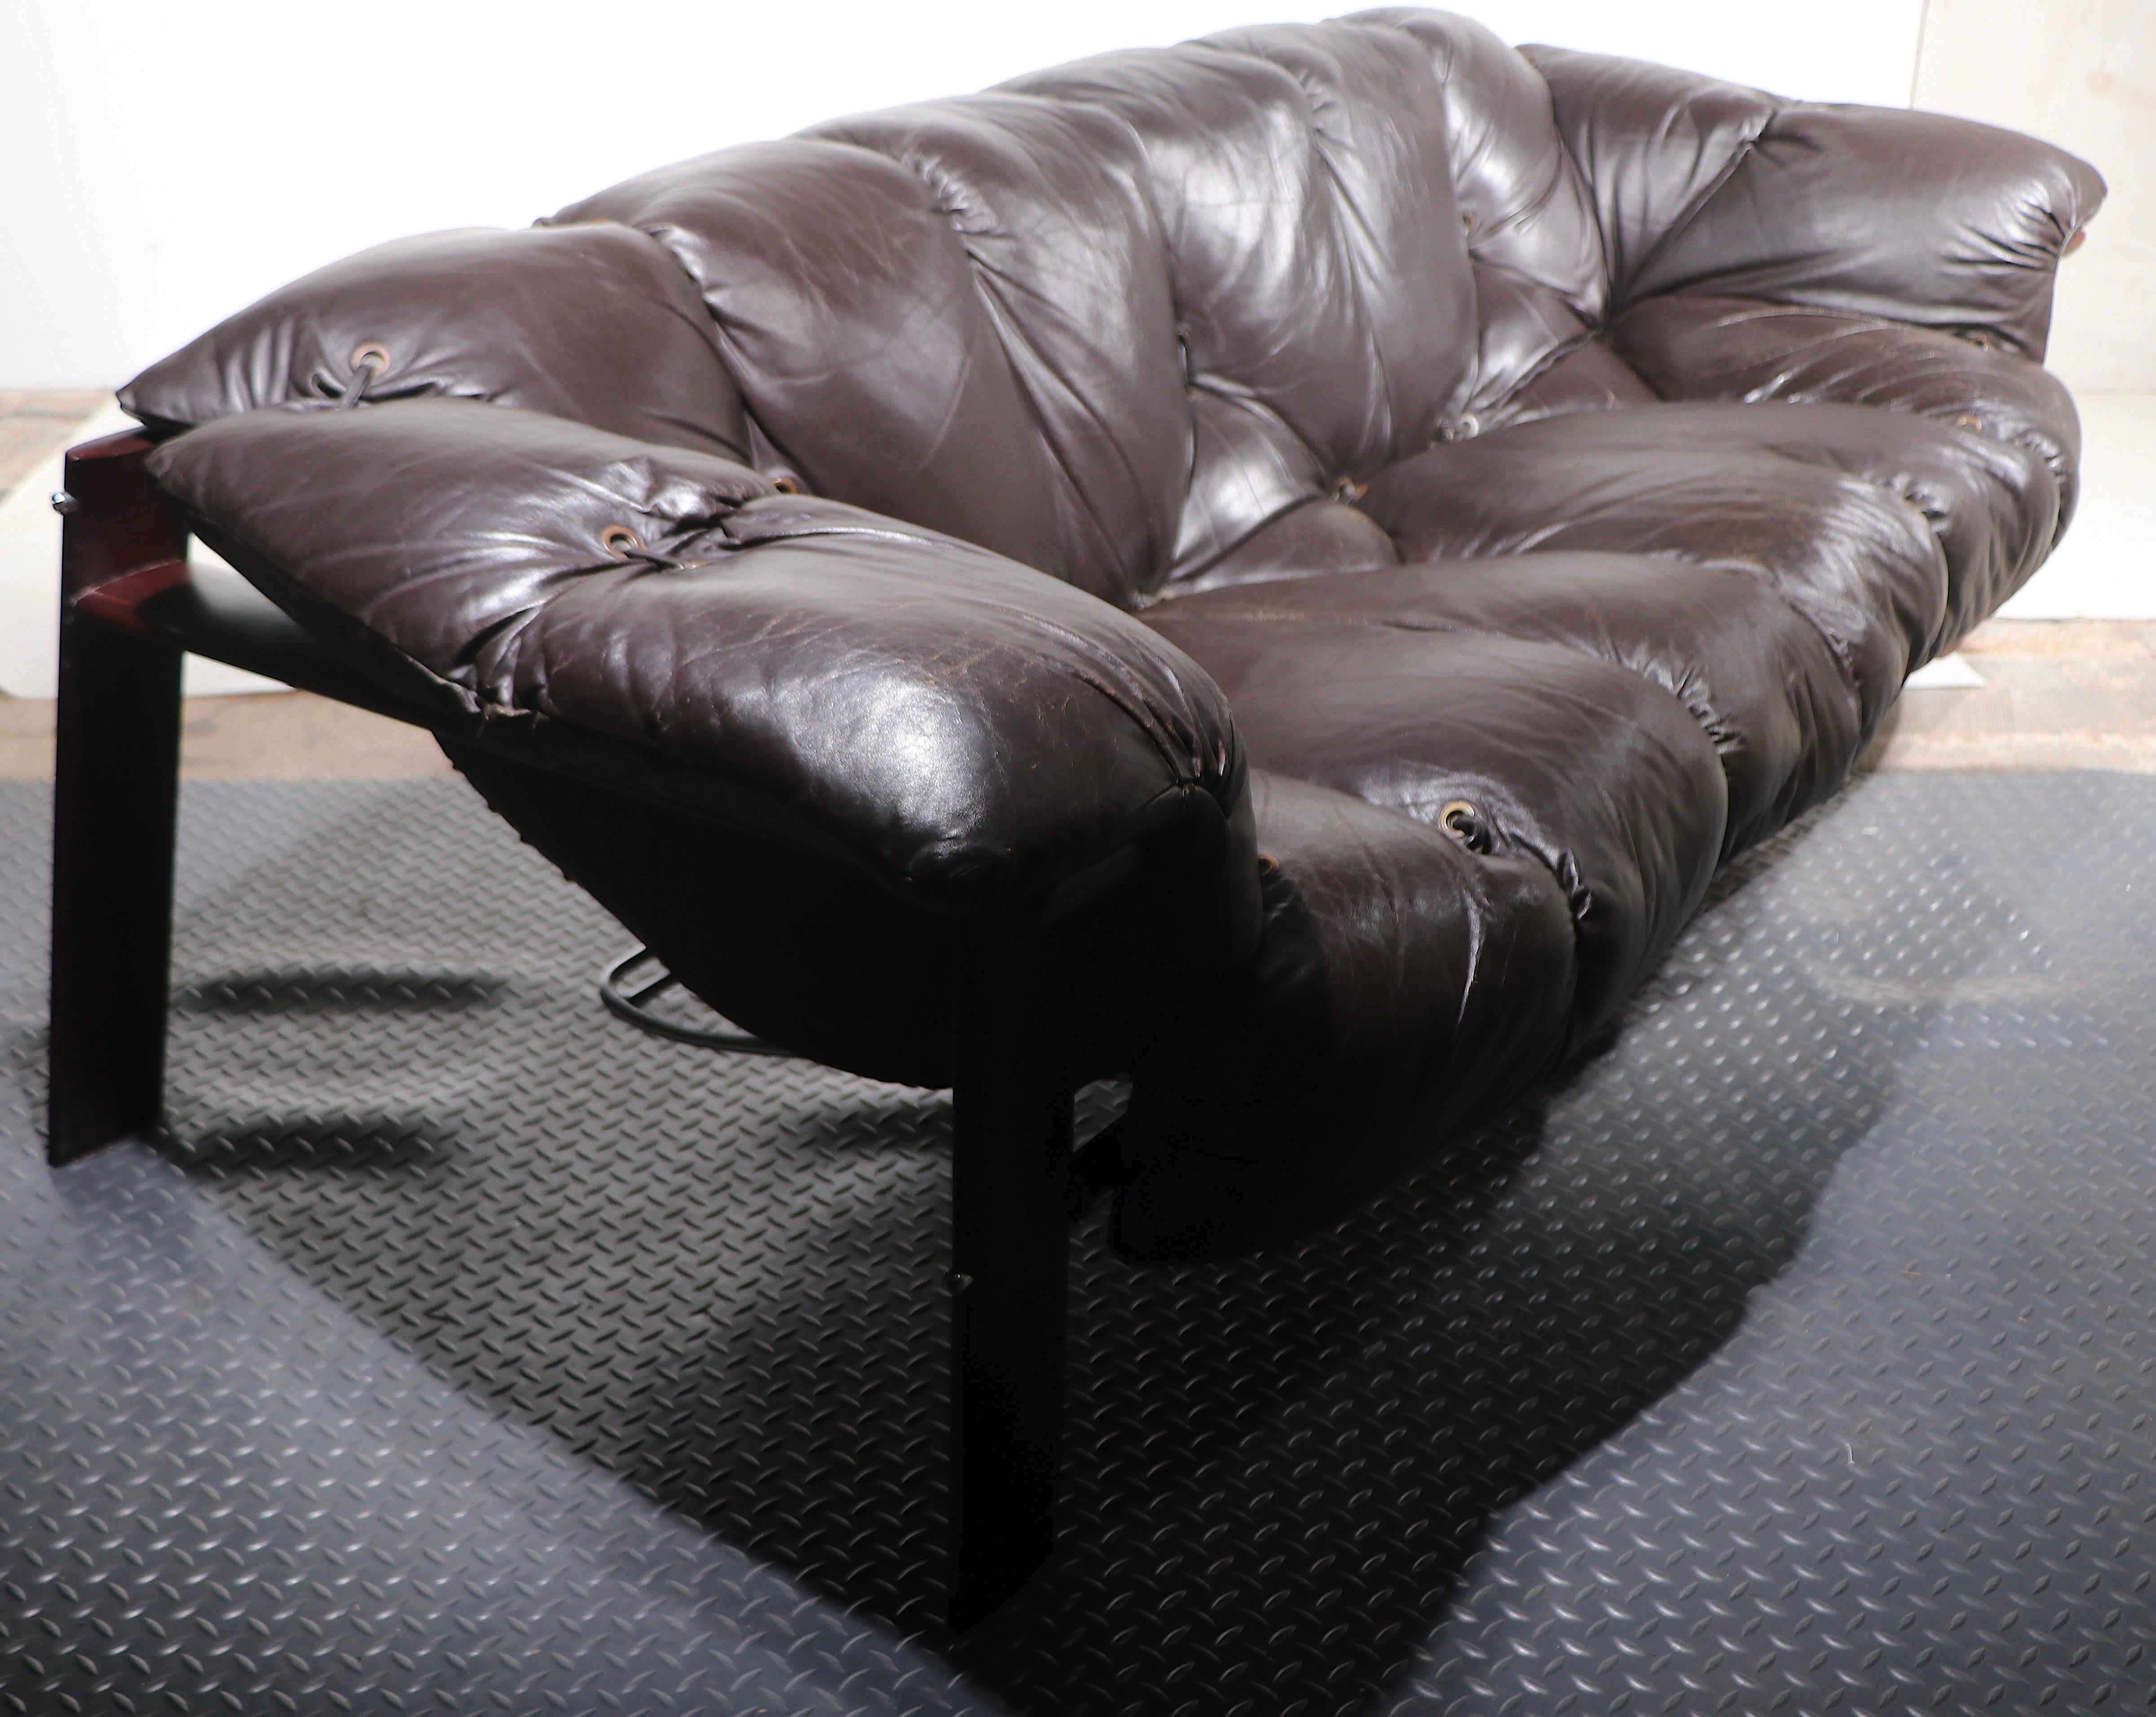 Seltenes brutalistisches Mid-Century-Sofa, entworfen von Percival Lafer, hergestellt in Brasilien, ca. 1970er Jahre. Das Sofa besteht aus einem Gestell aus seltenem Hartholz mit originalen und äußerst bequemen, durchgehenden Sitz- und Rückenpolstern